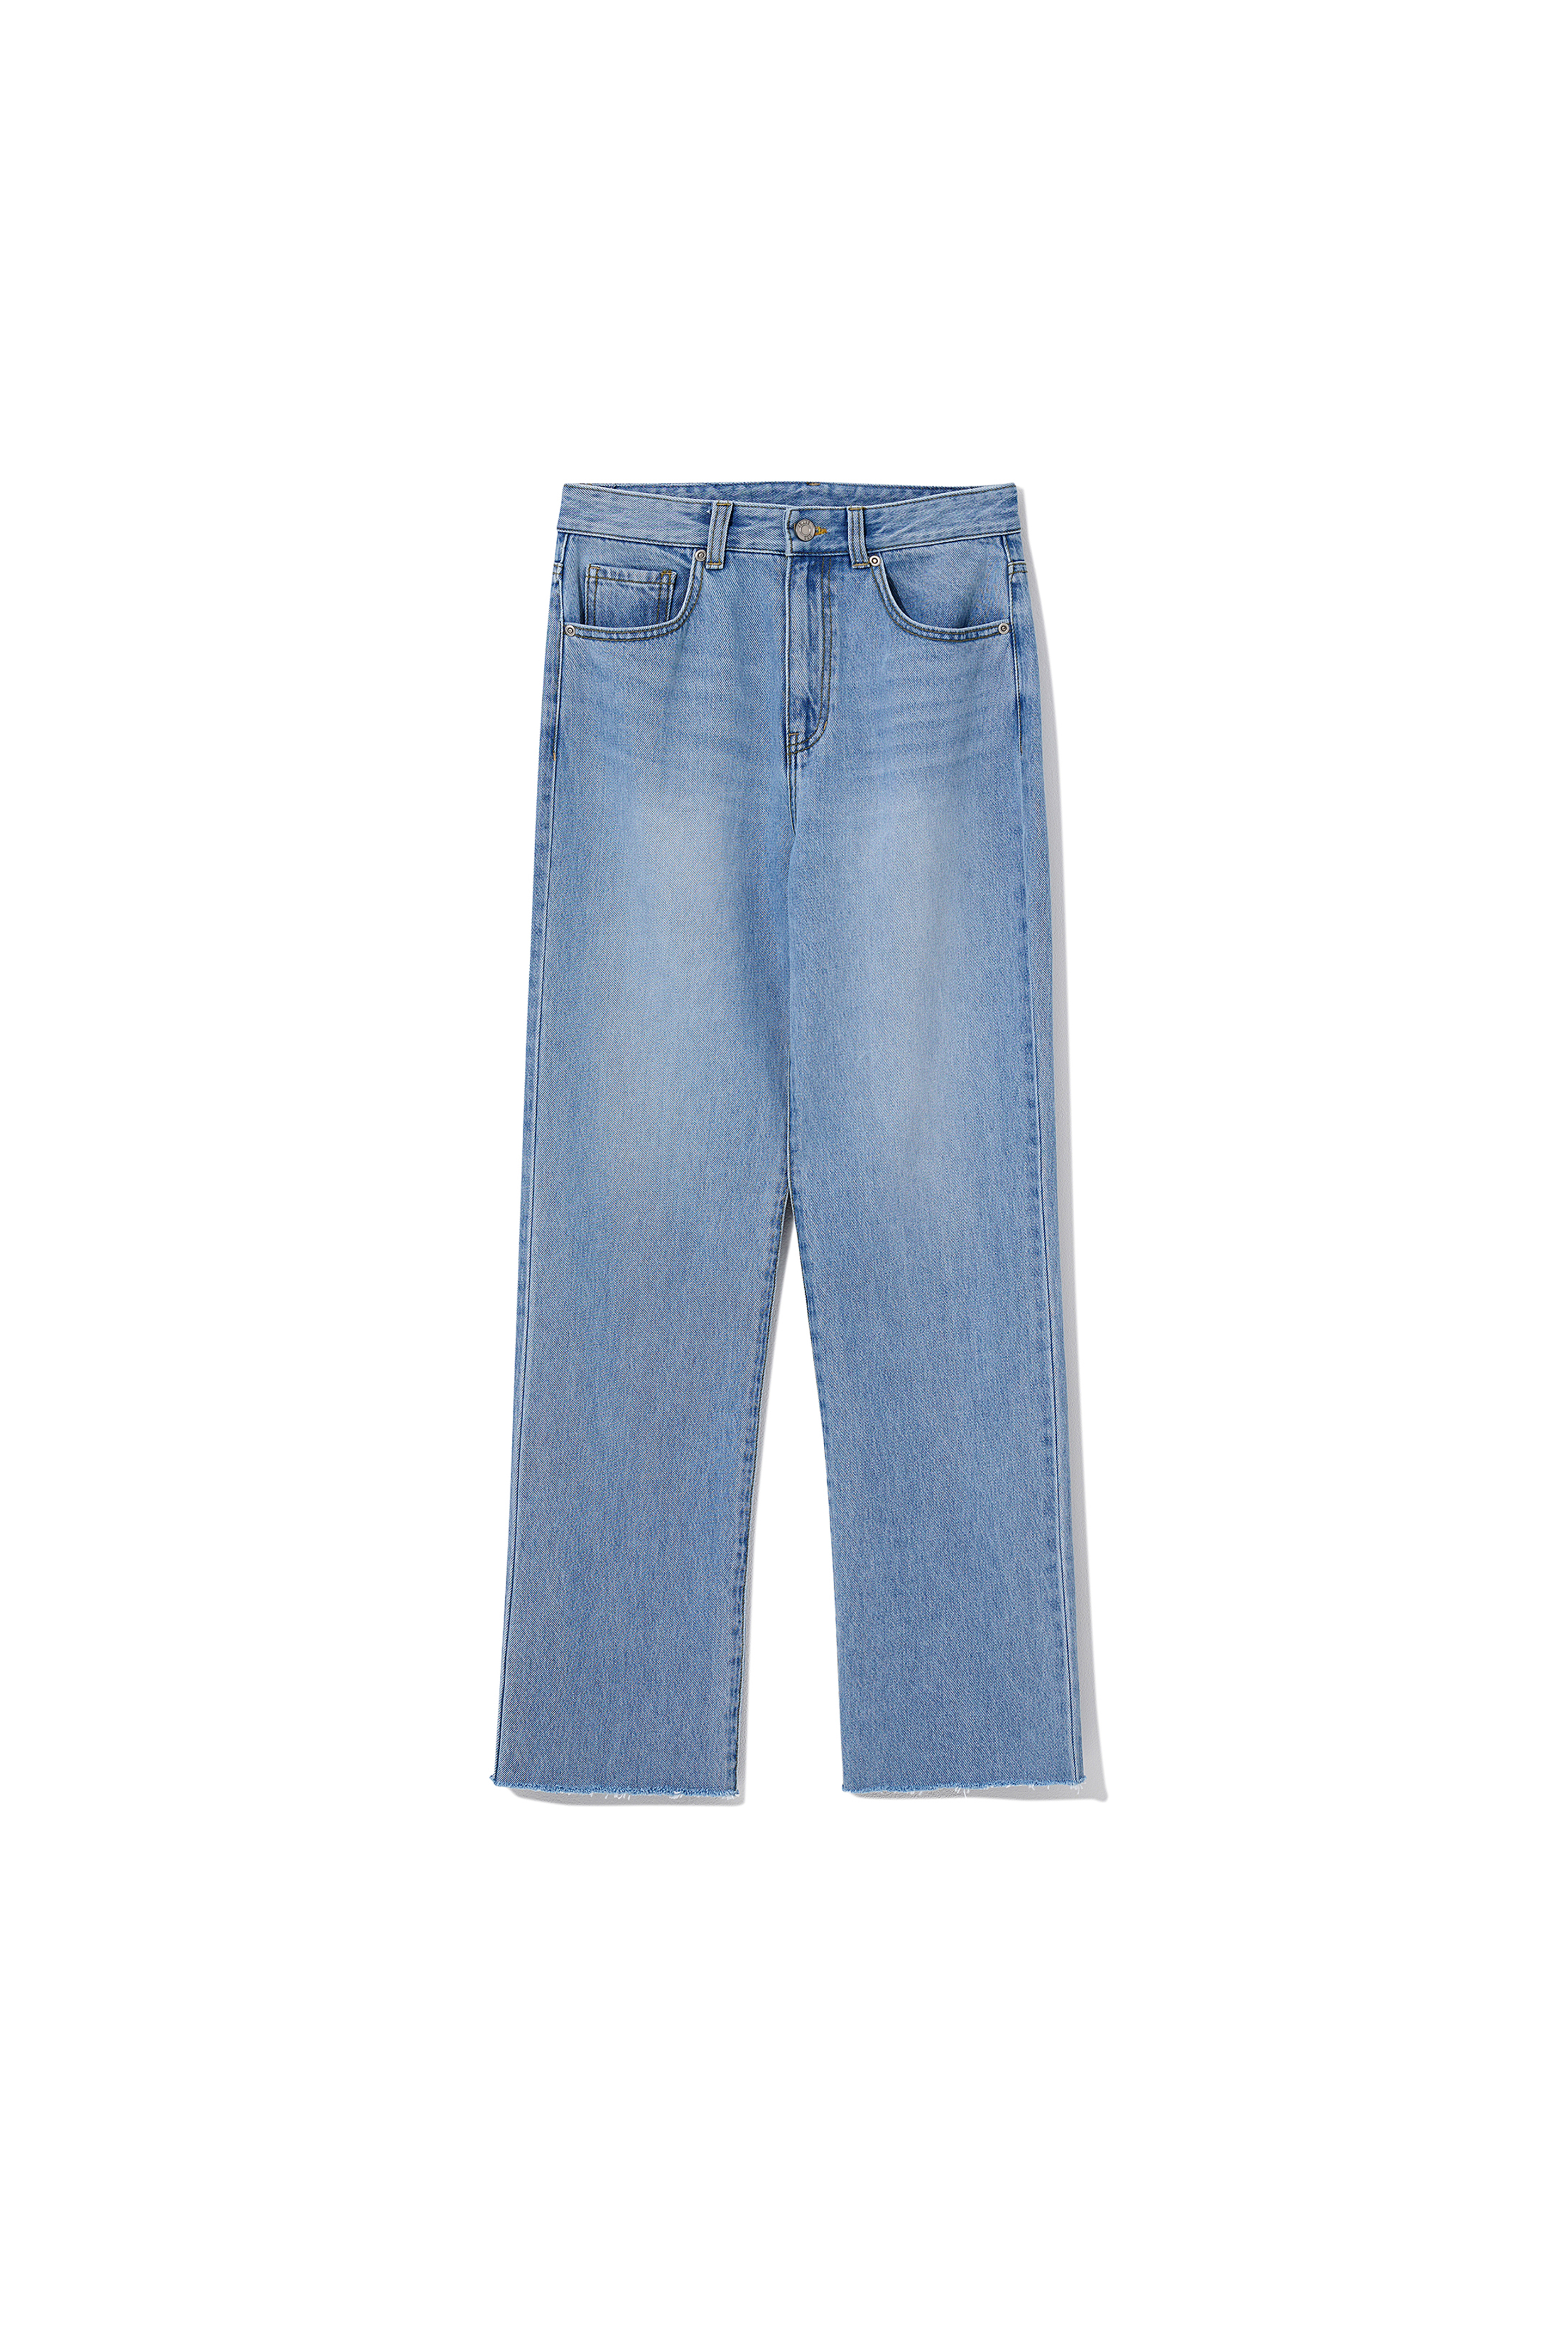 Jeans Midrise Straight fit (Raw-cut) L.Blue